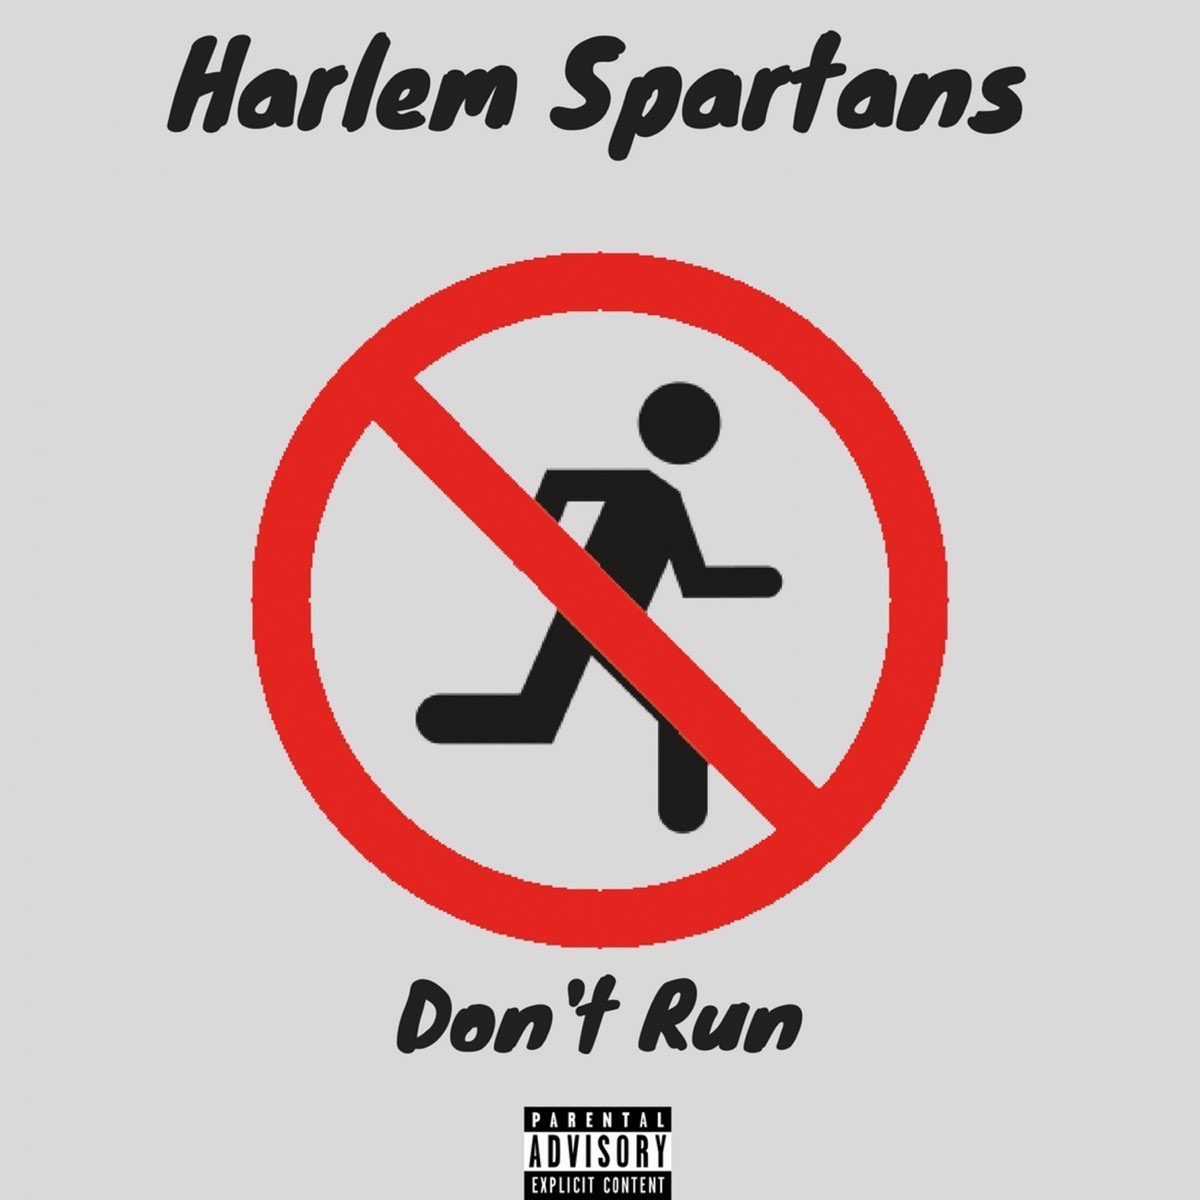 Dont run. Don't Run. Harlem Spartans. Ran didn't Run. Don't Run here.